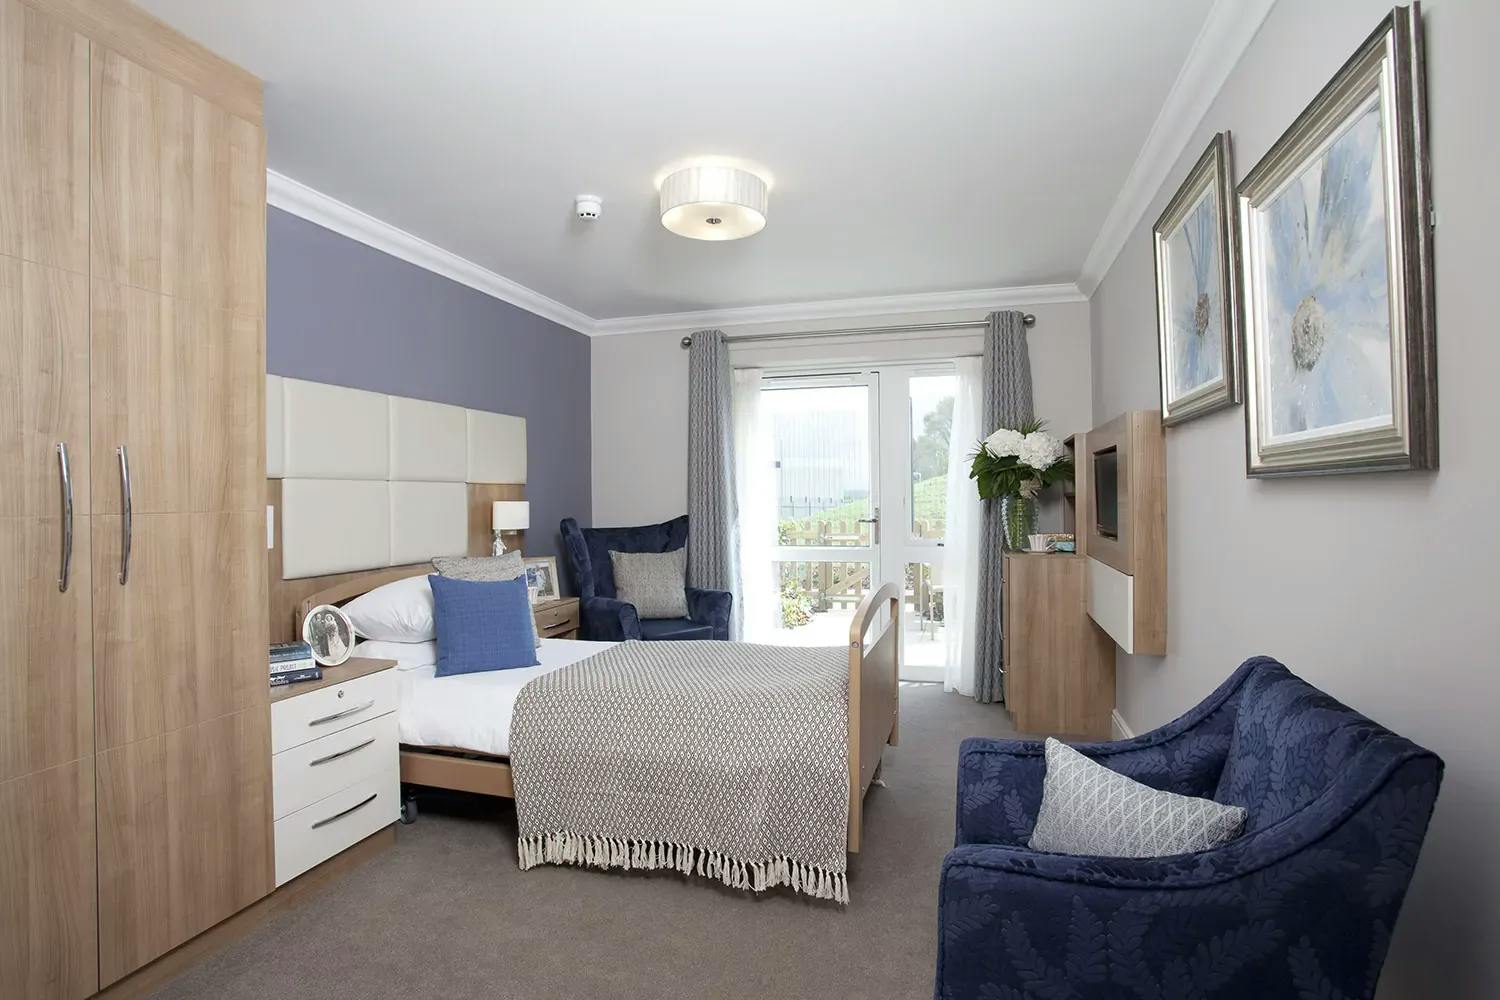 Bedroom of Heathfield Court retirement development in Bexley